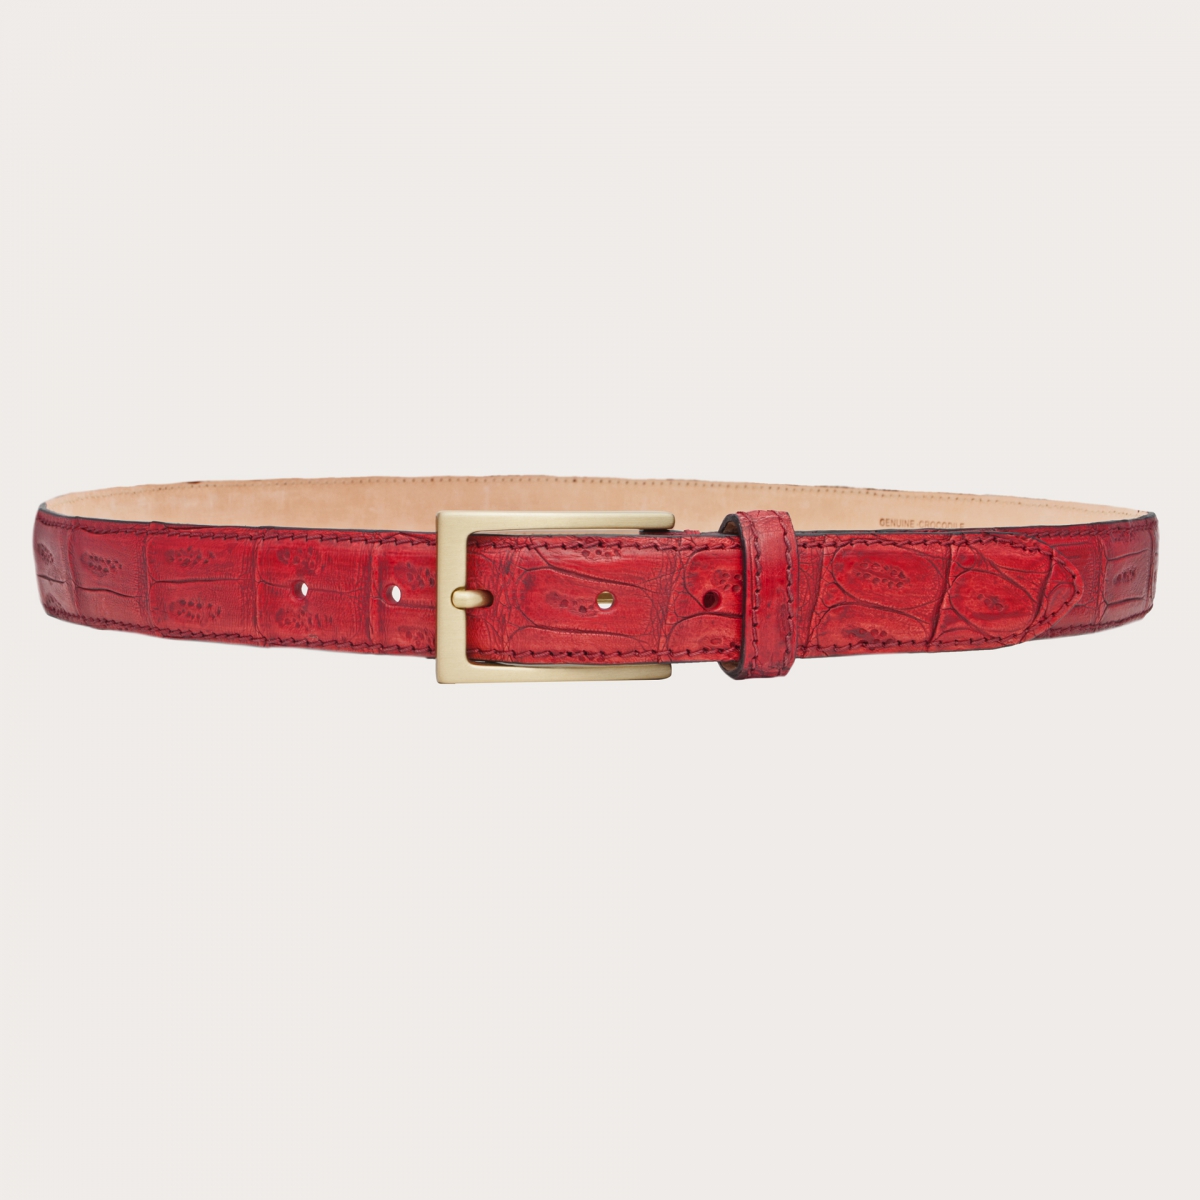 BRUCLE Elegante cinturón en cola de cocodrilo roja coloreada a mano